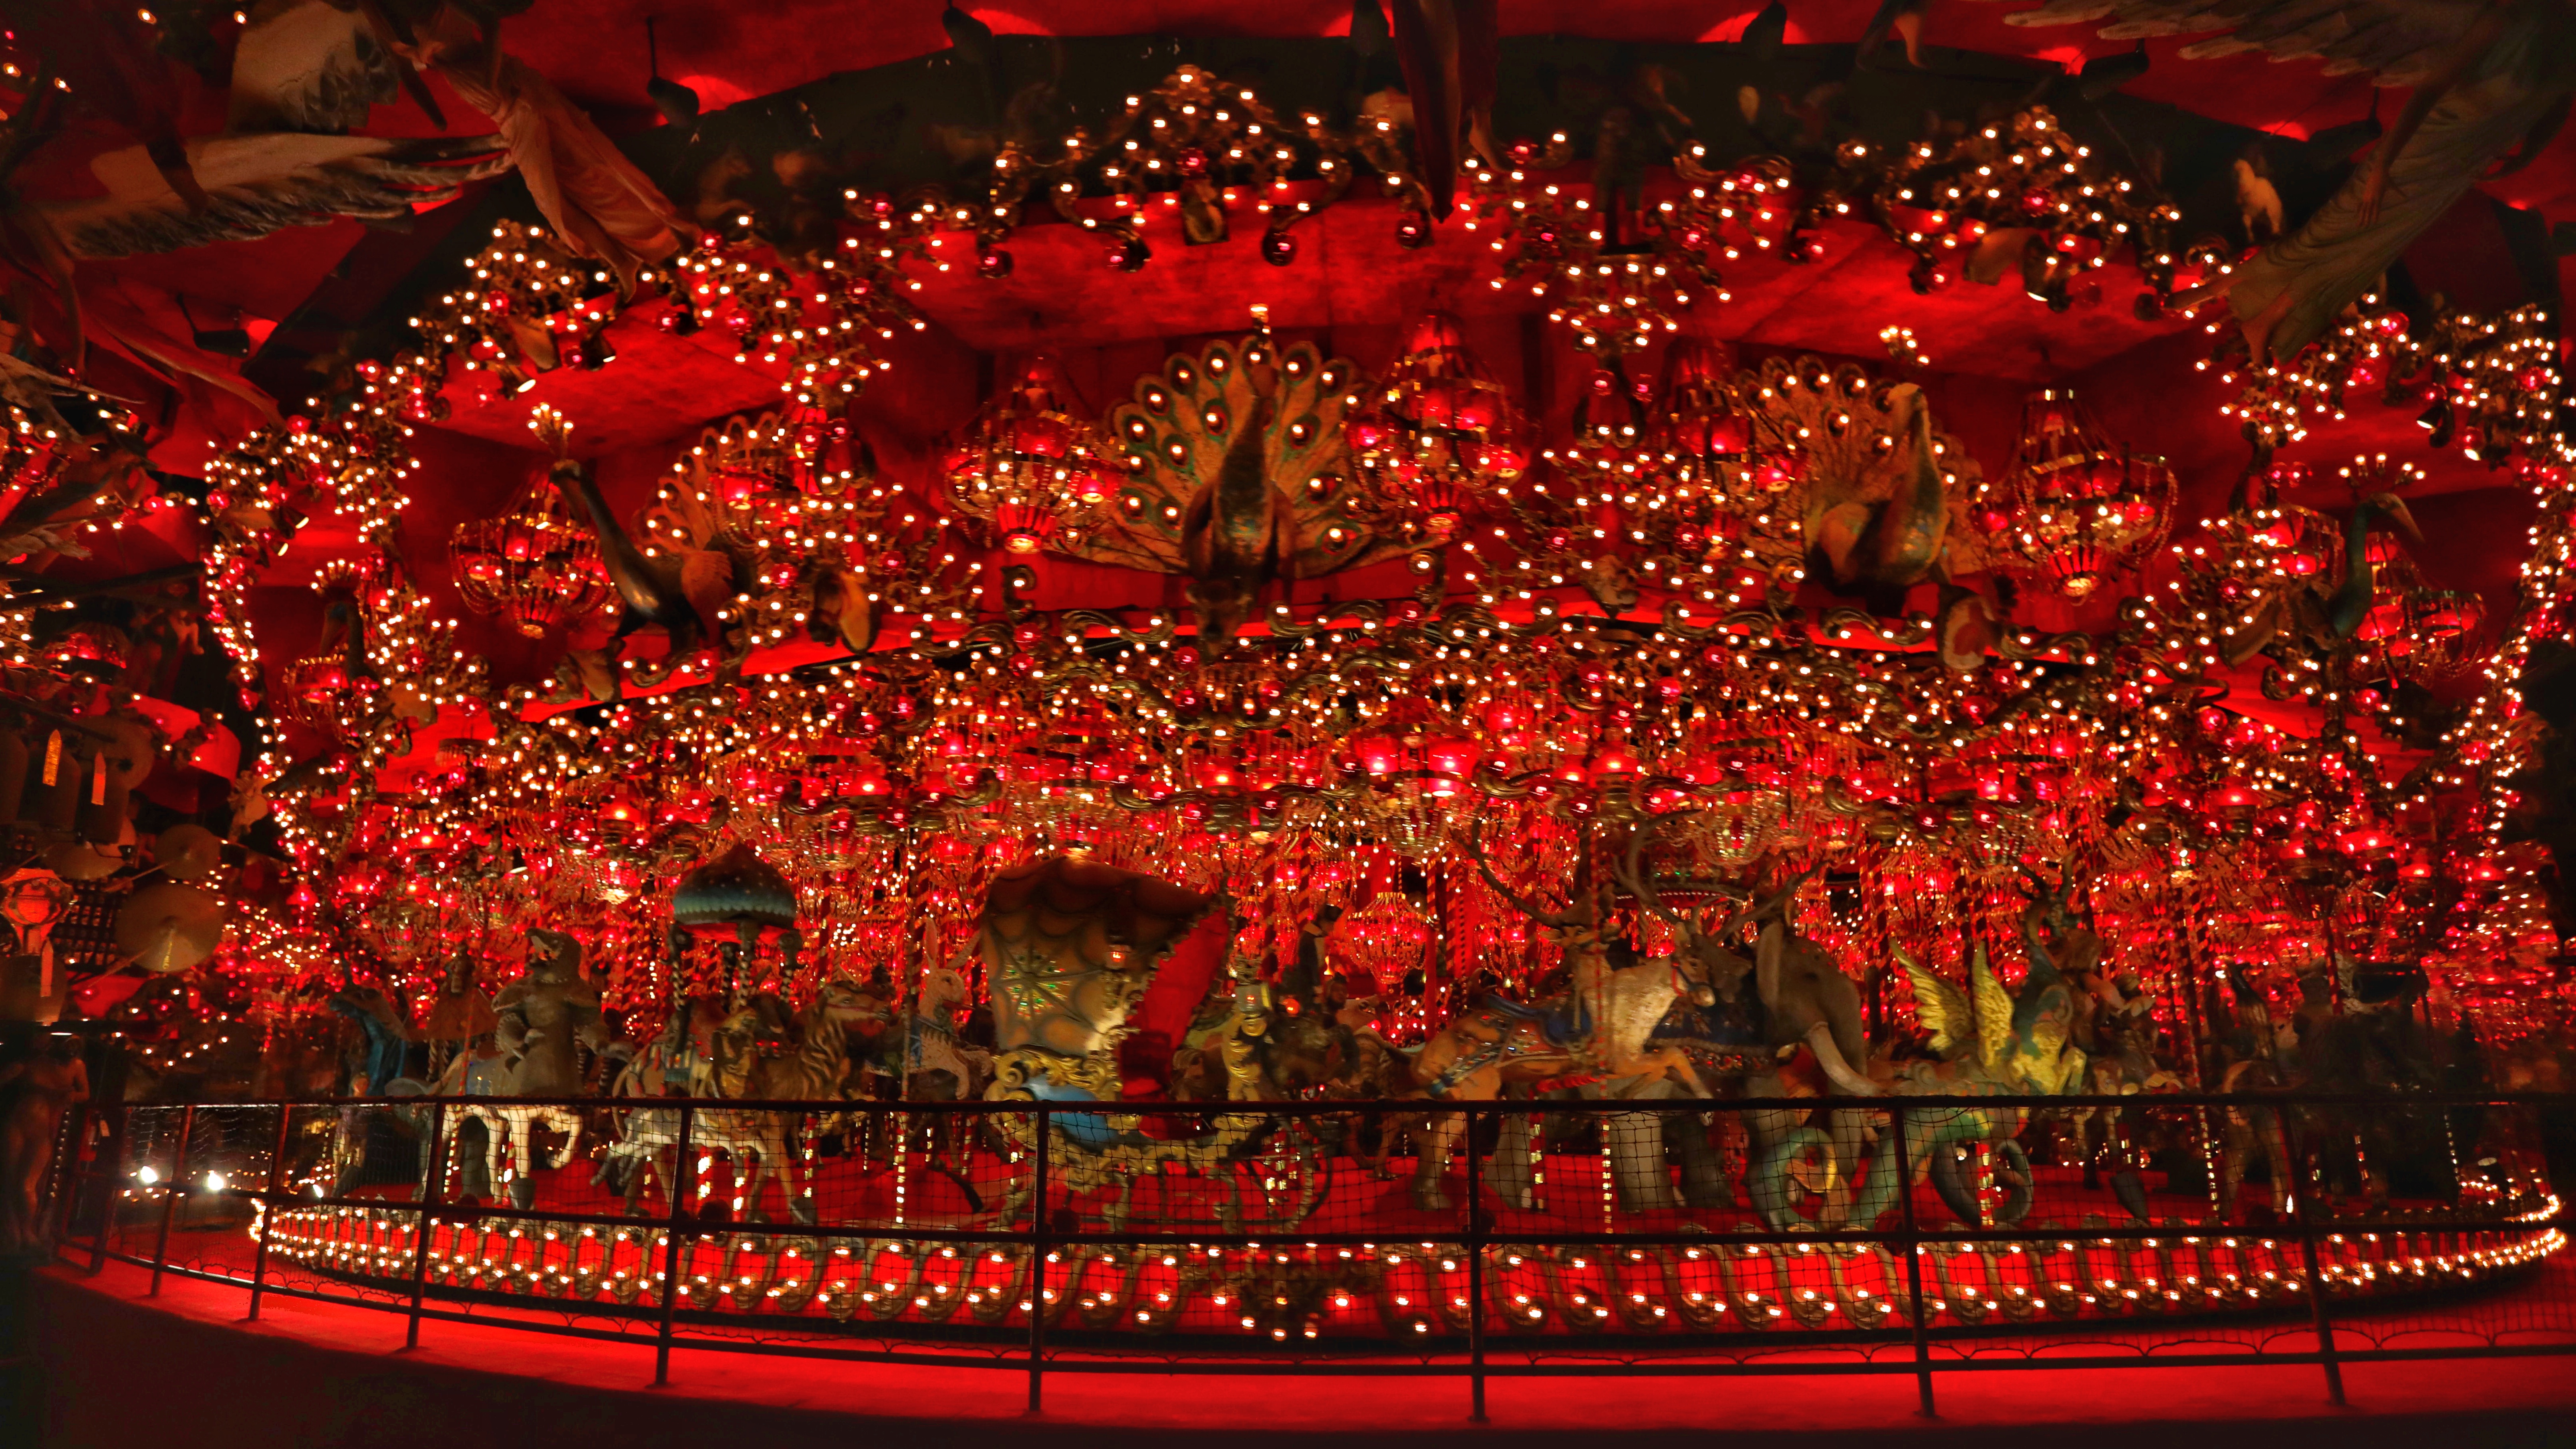 Carousel in red light.